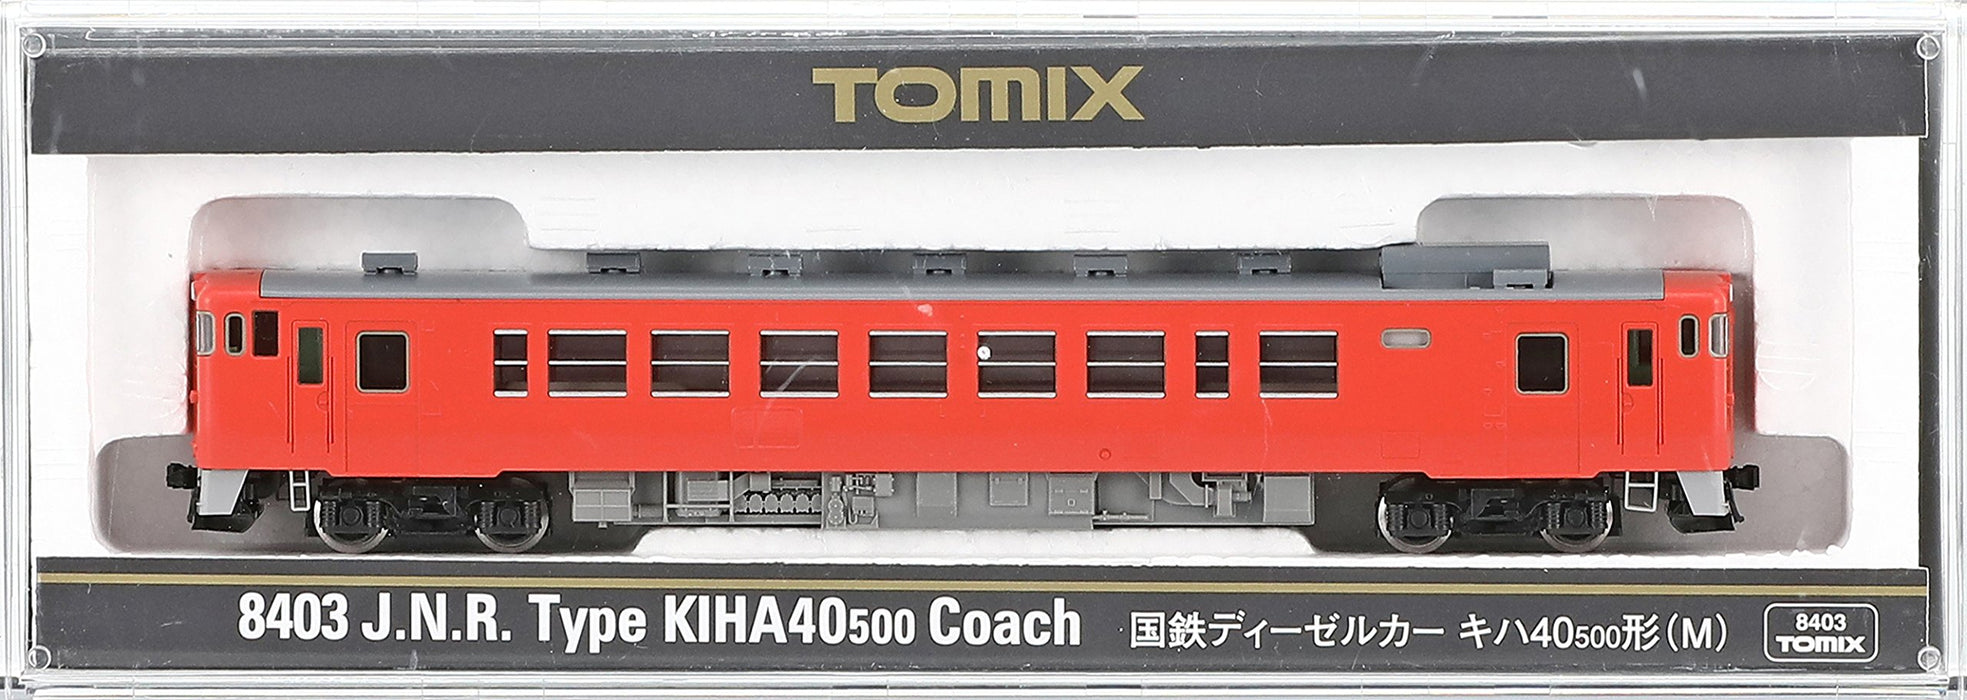 Tomytec Tomix Kiha 40-500 M 8403 Diesel Car: N Gauge Railway Model